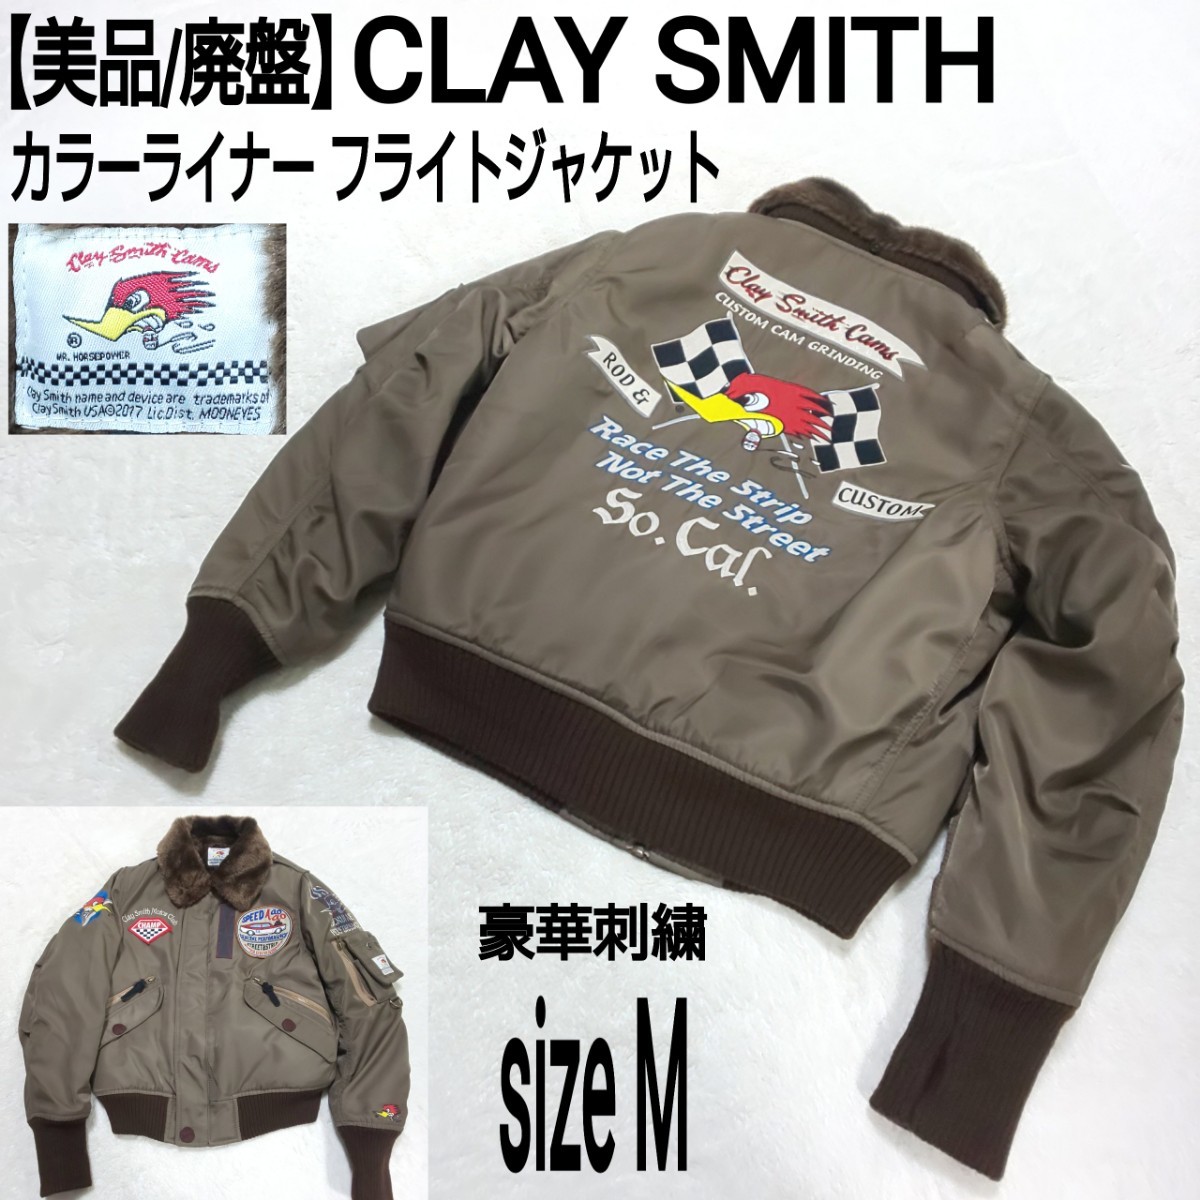 クレイスミスジャケット CSY-6170 - バイクウエア